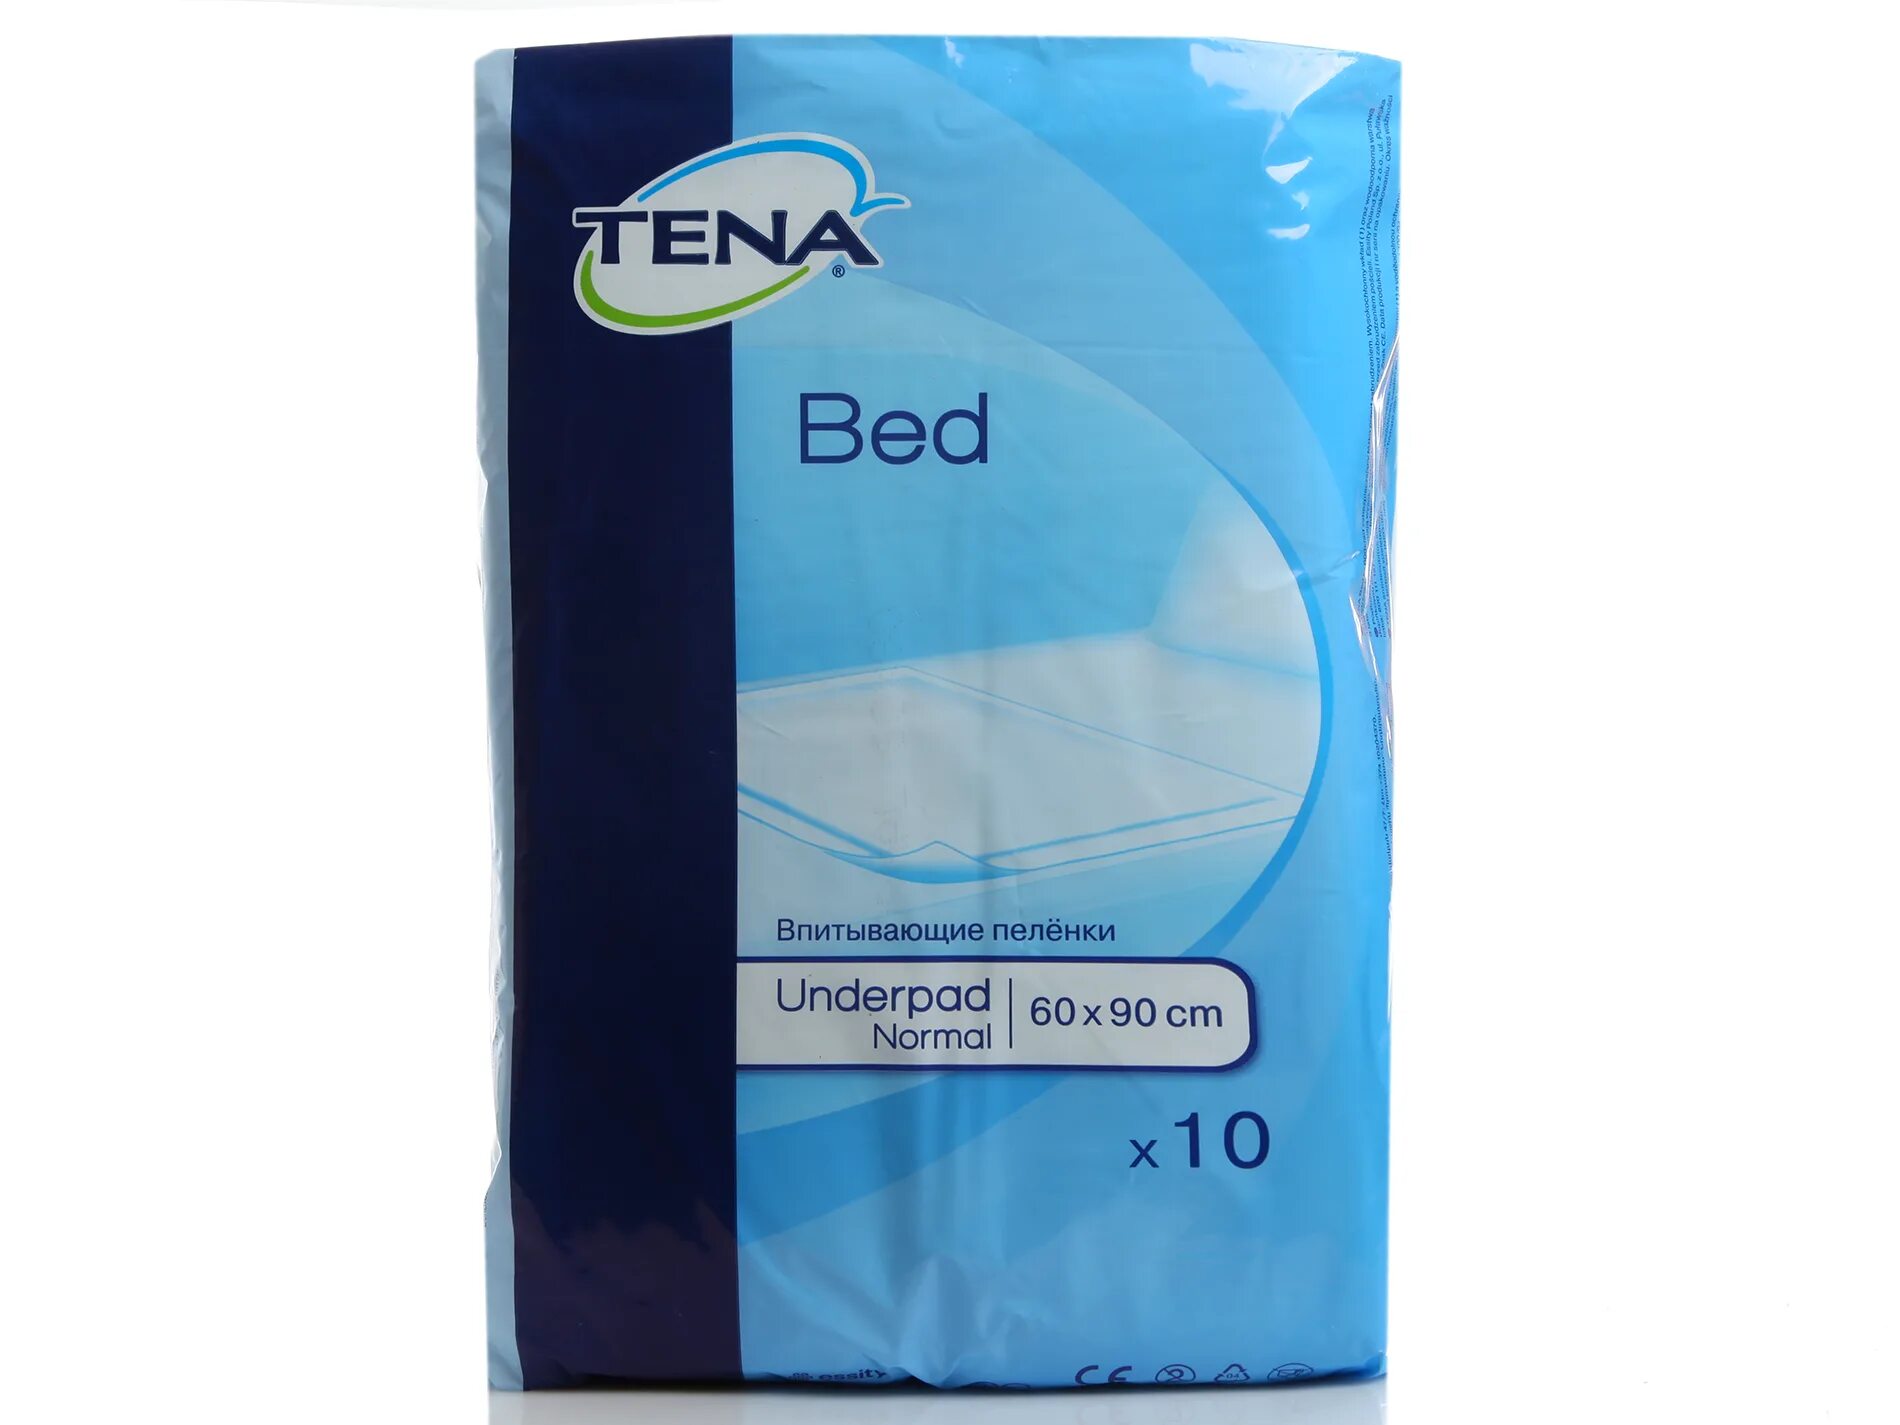 Одноразовые пеленки для лежачих больных цена впитывающие. Tena Bed Underpad normal 60 90. Пеленки для лежачих больных 60х90 Seni. Простыни сени 60х60 30. Пелёнки одноразовые 60х90 для лежачих больных.